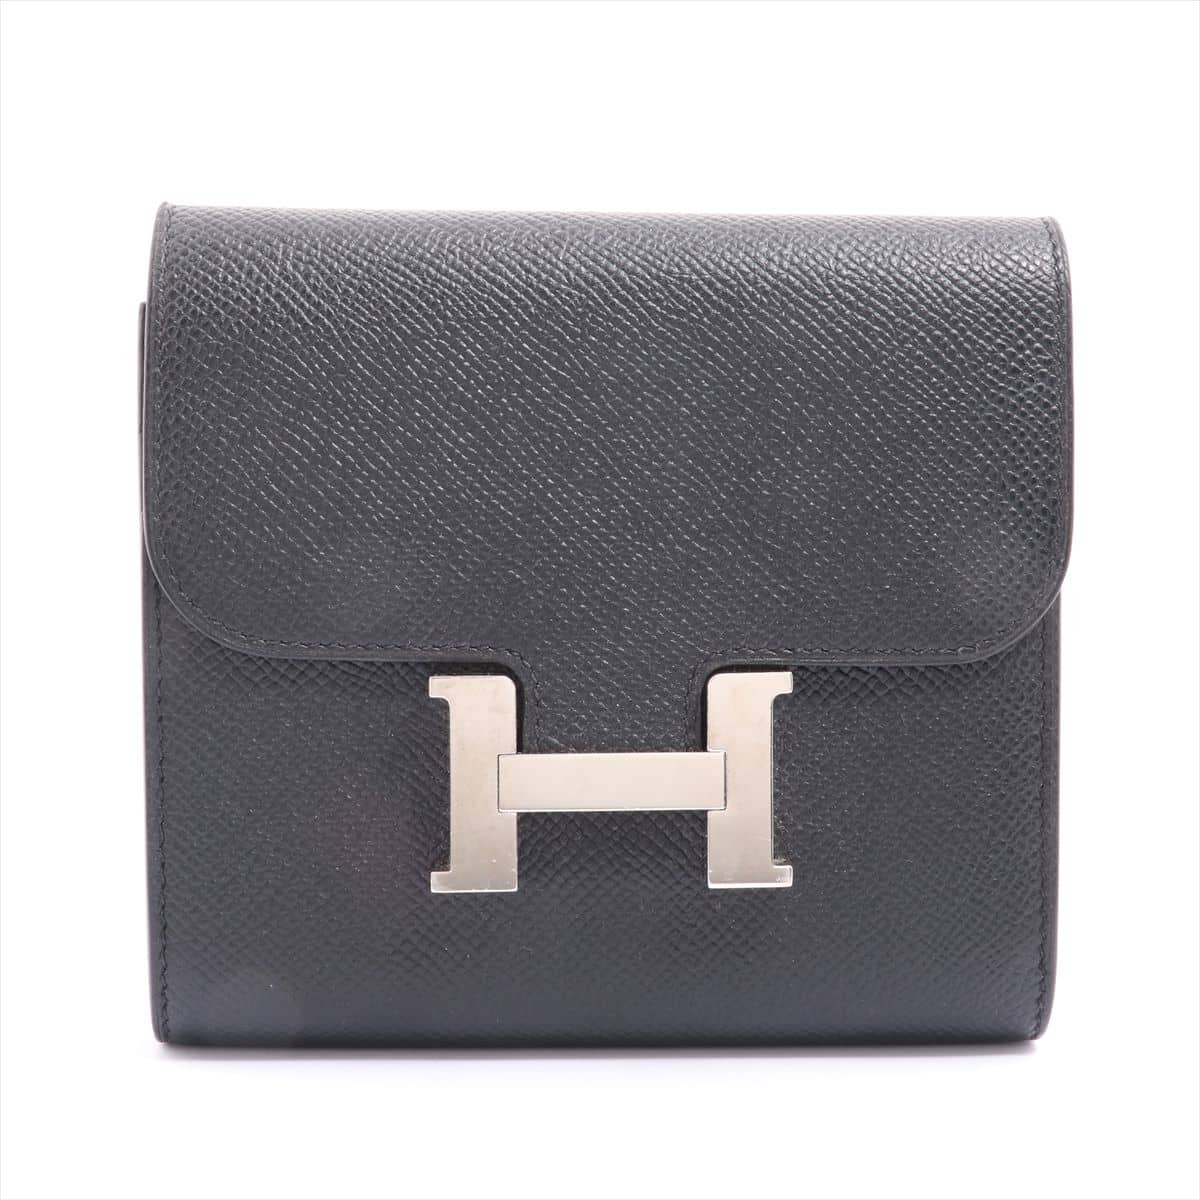 Hermès Constance Compact Veau Epsom Wallet Black Silver Metal fittings D: 2019